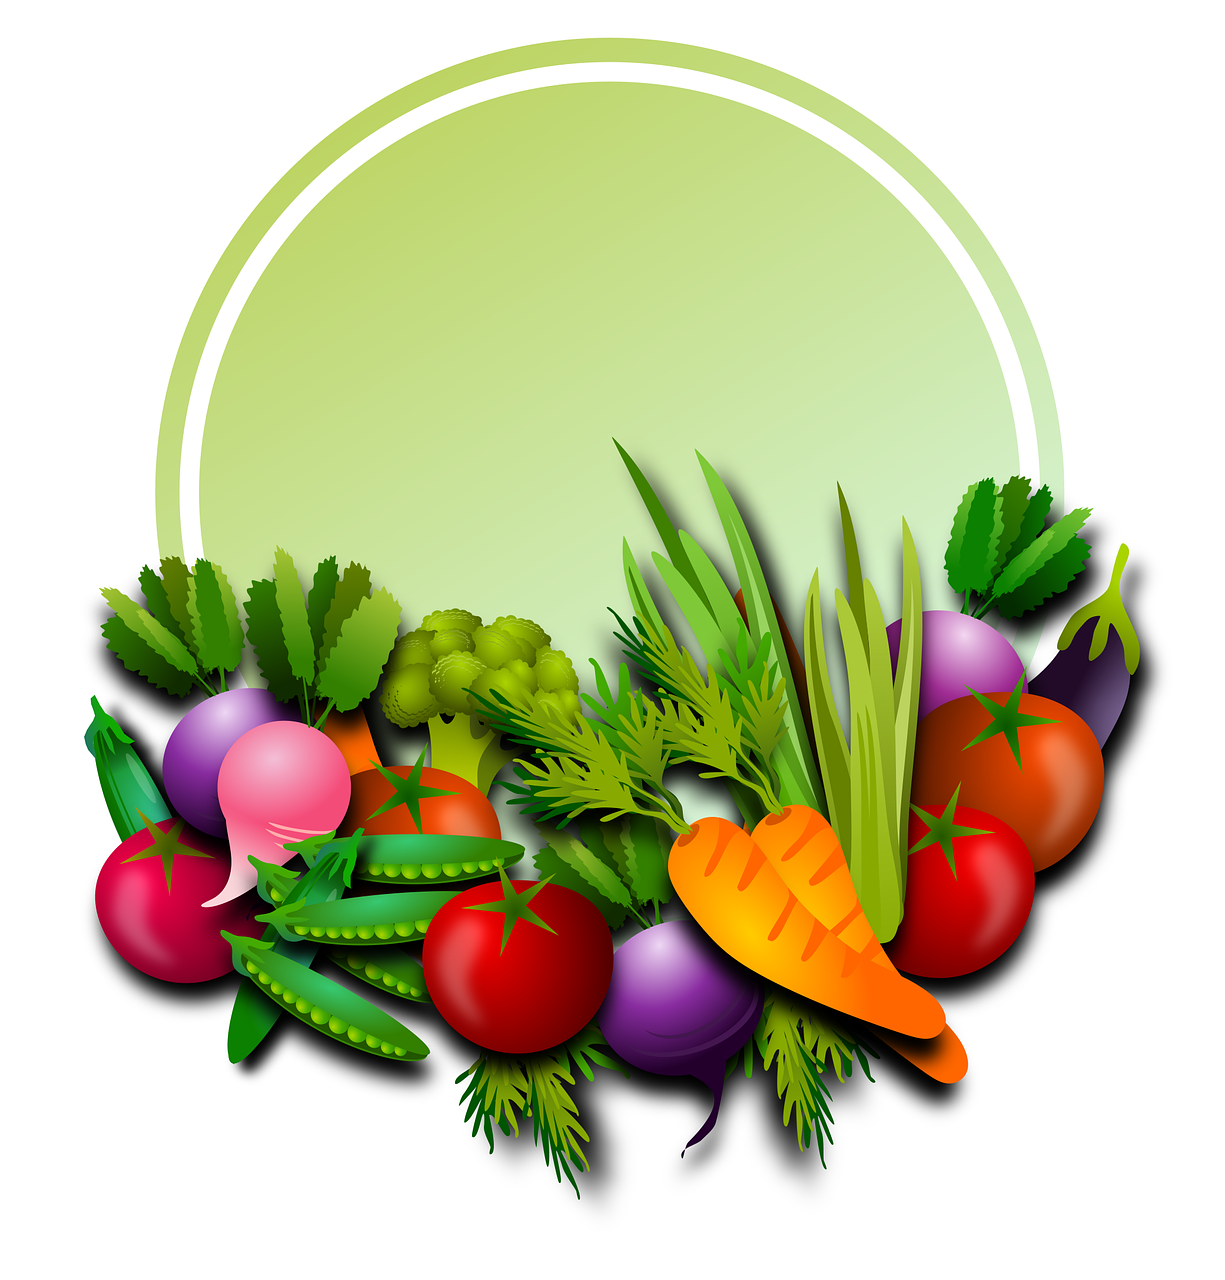 Daržovės, Vaisiai, Augalai, Horta, Maistas, Salotos, Virtuvė, Maitinimas, Gamta, Sveikas